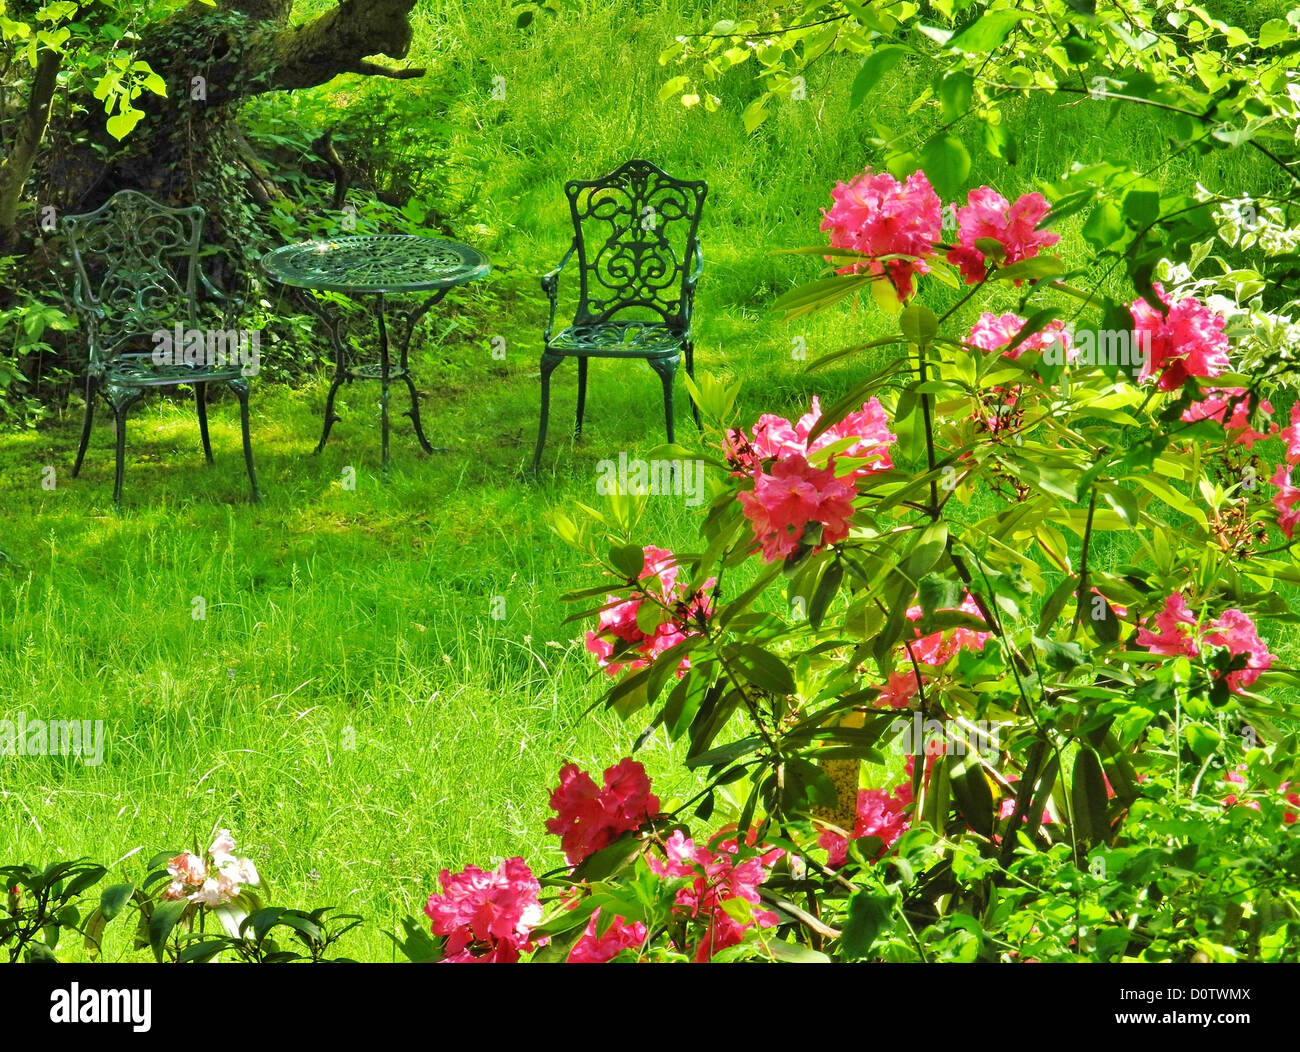 Allemagne, Europe, jardin, sièges, les buissons, les fleurs, s'épanouir, rouge, table, chaises, métal, meadow Banque D'Images